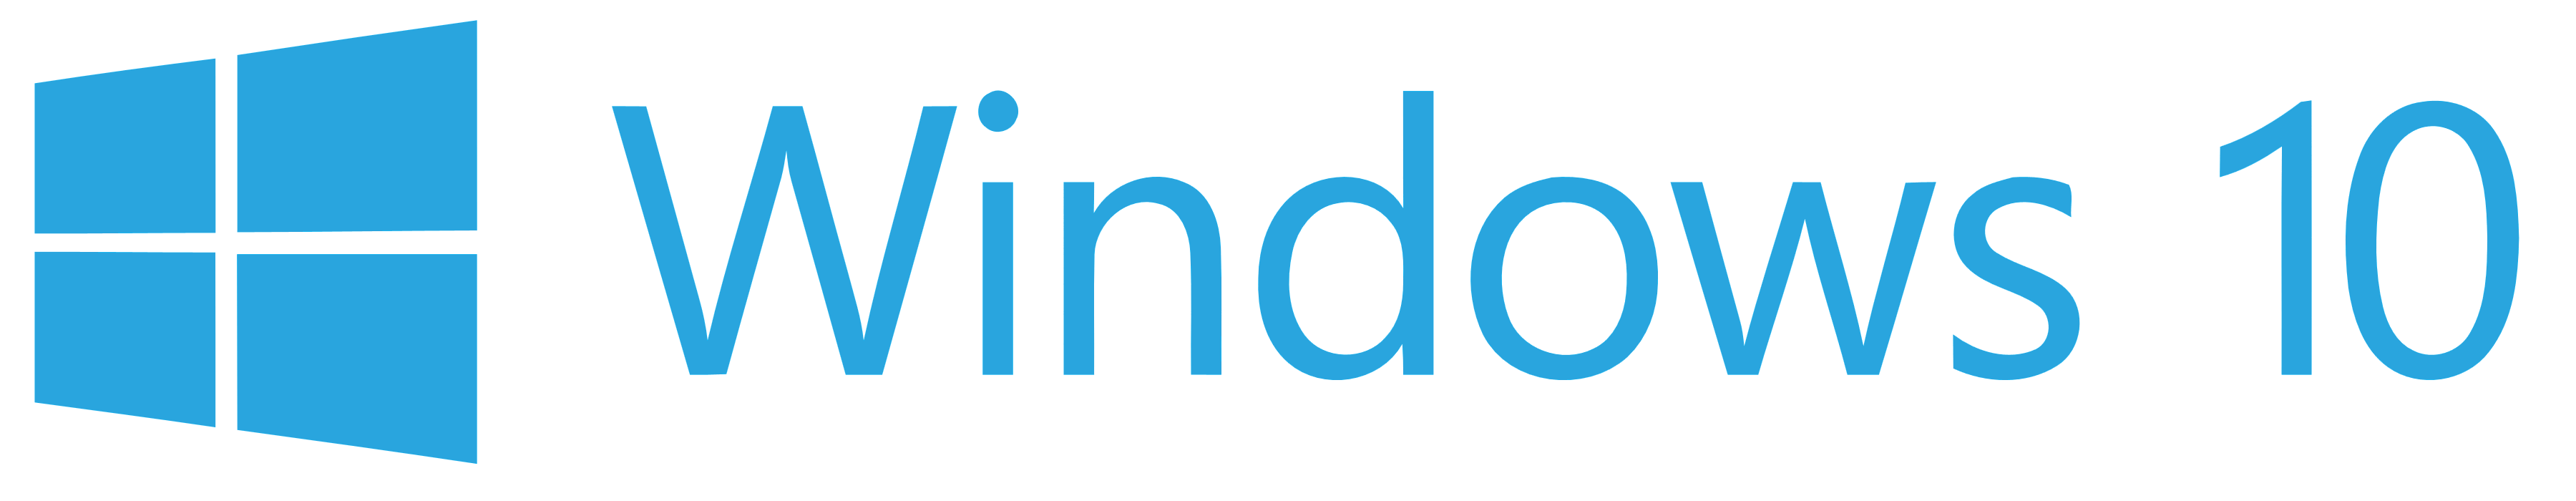 Windows 10 logo, logotype